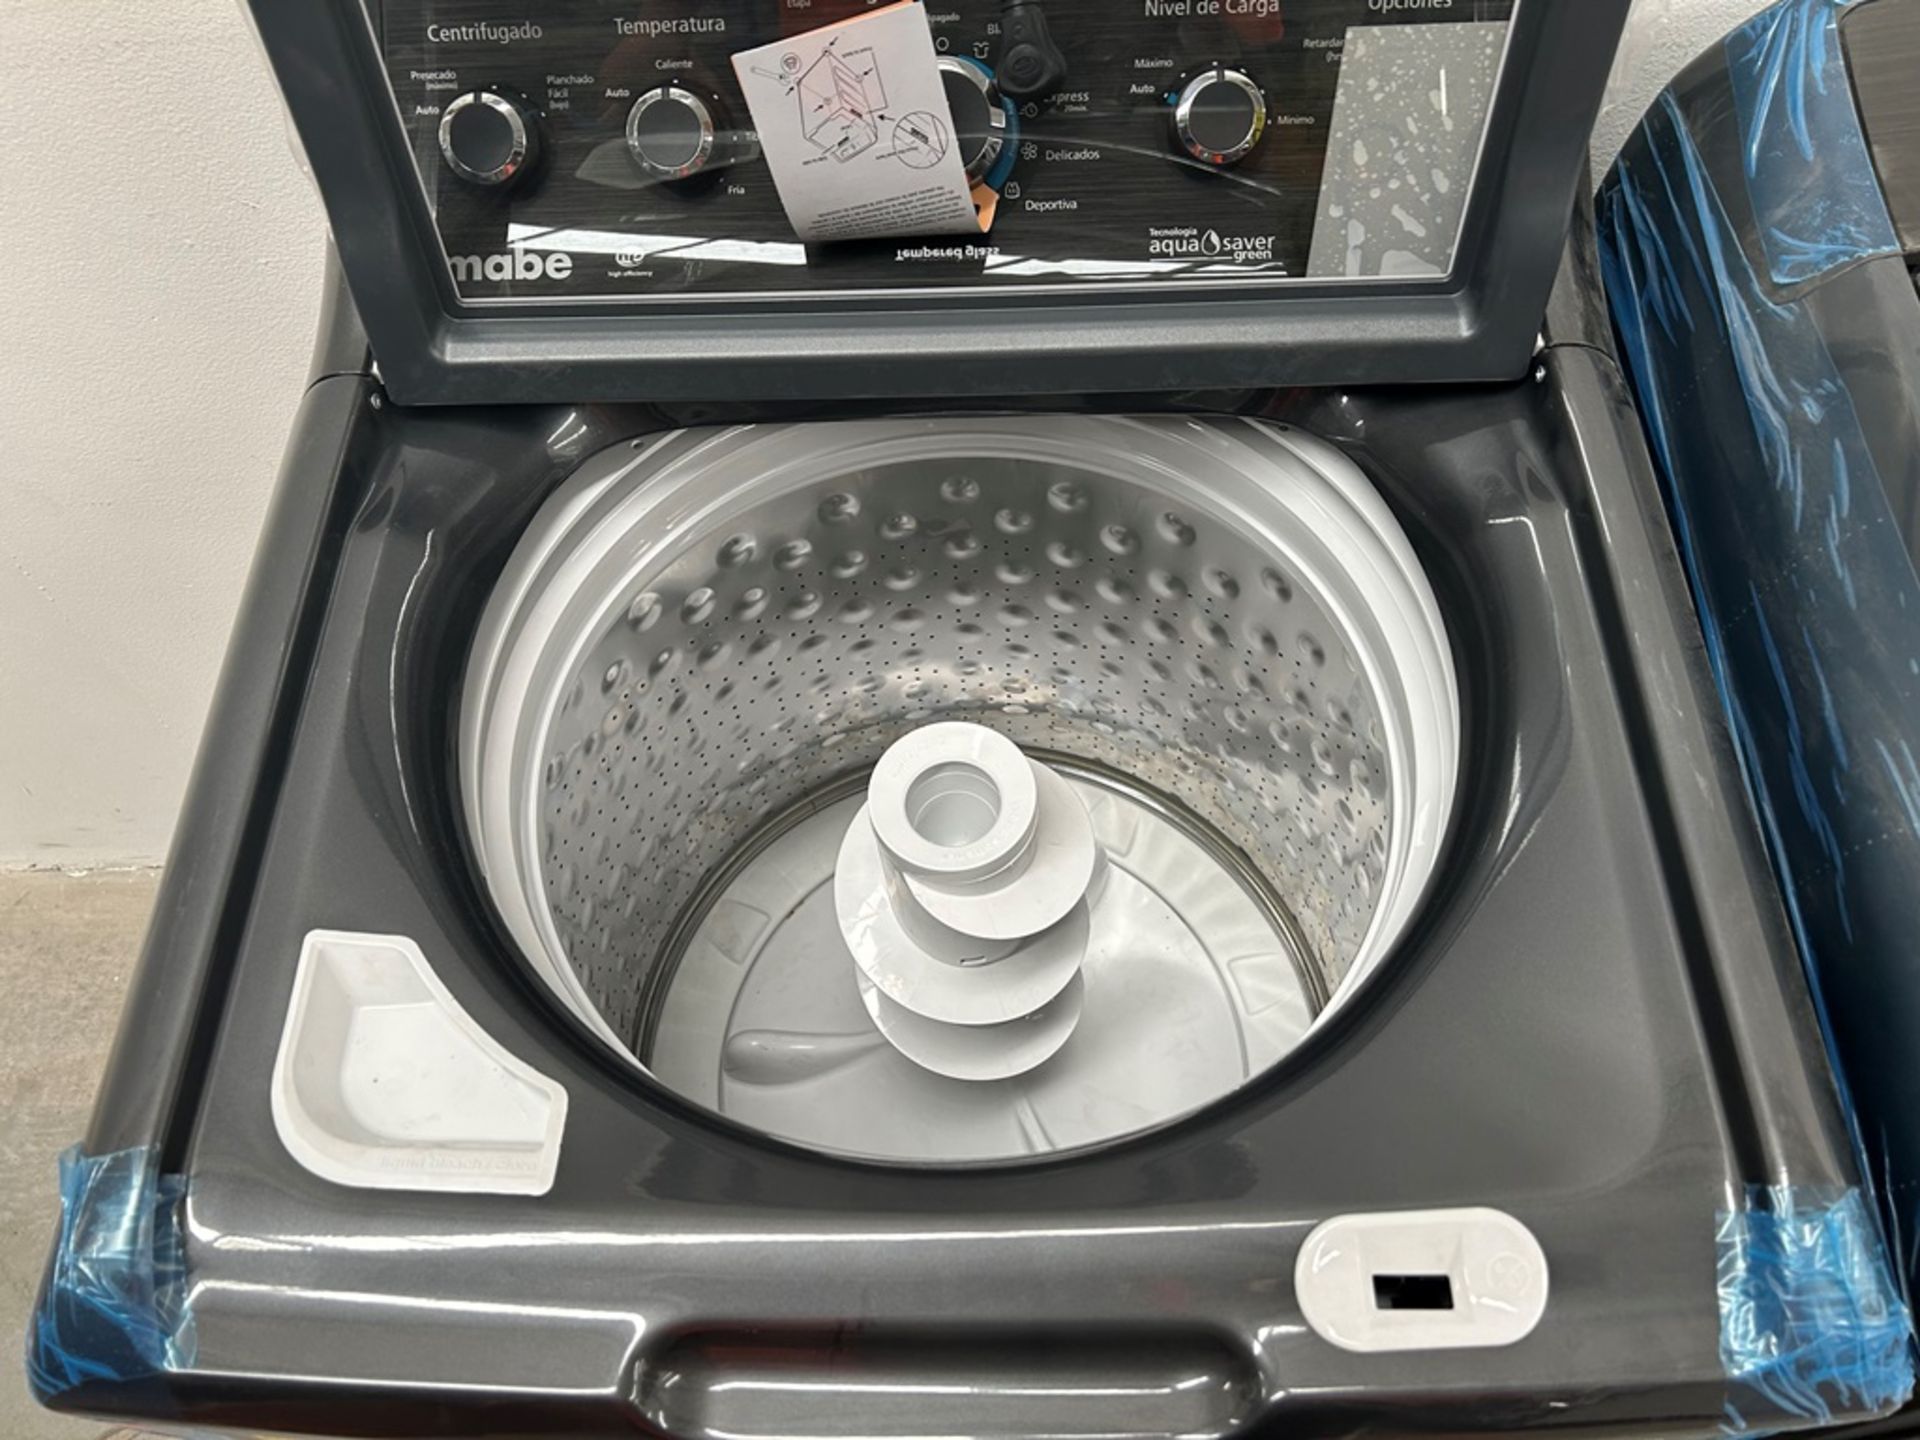 Lote de 2 lavadoras contiene: 1 Lavadora de 24 KG, Marca MABE, Modelo LMA7415WDAB10, Serie S18509, - Image 4 of 10